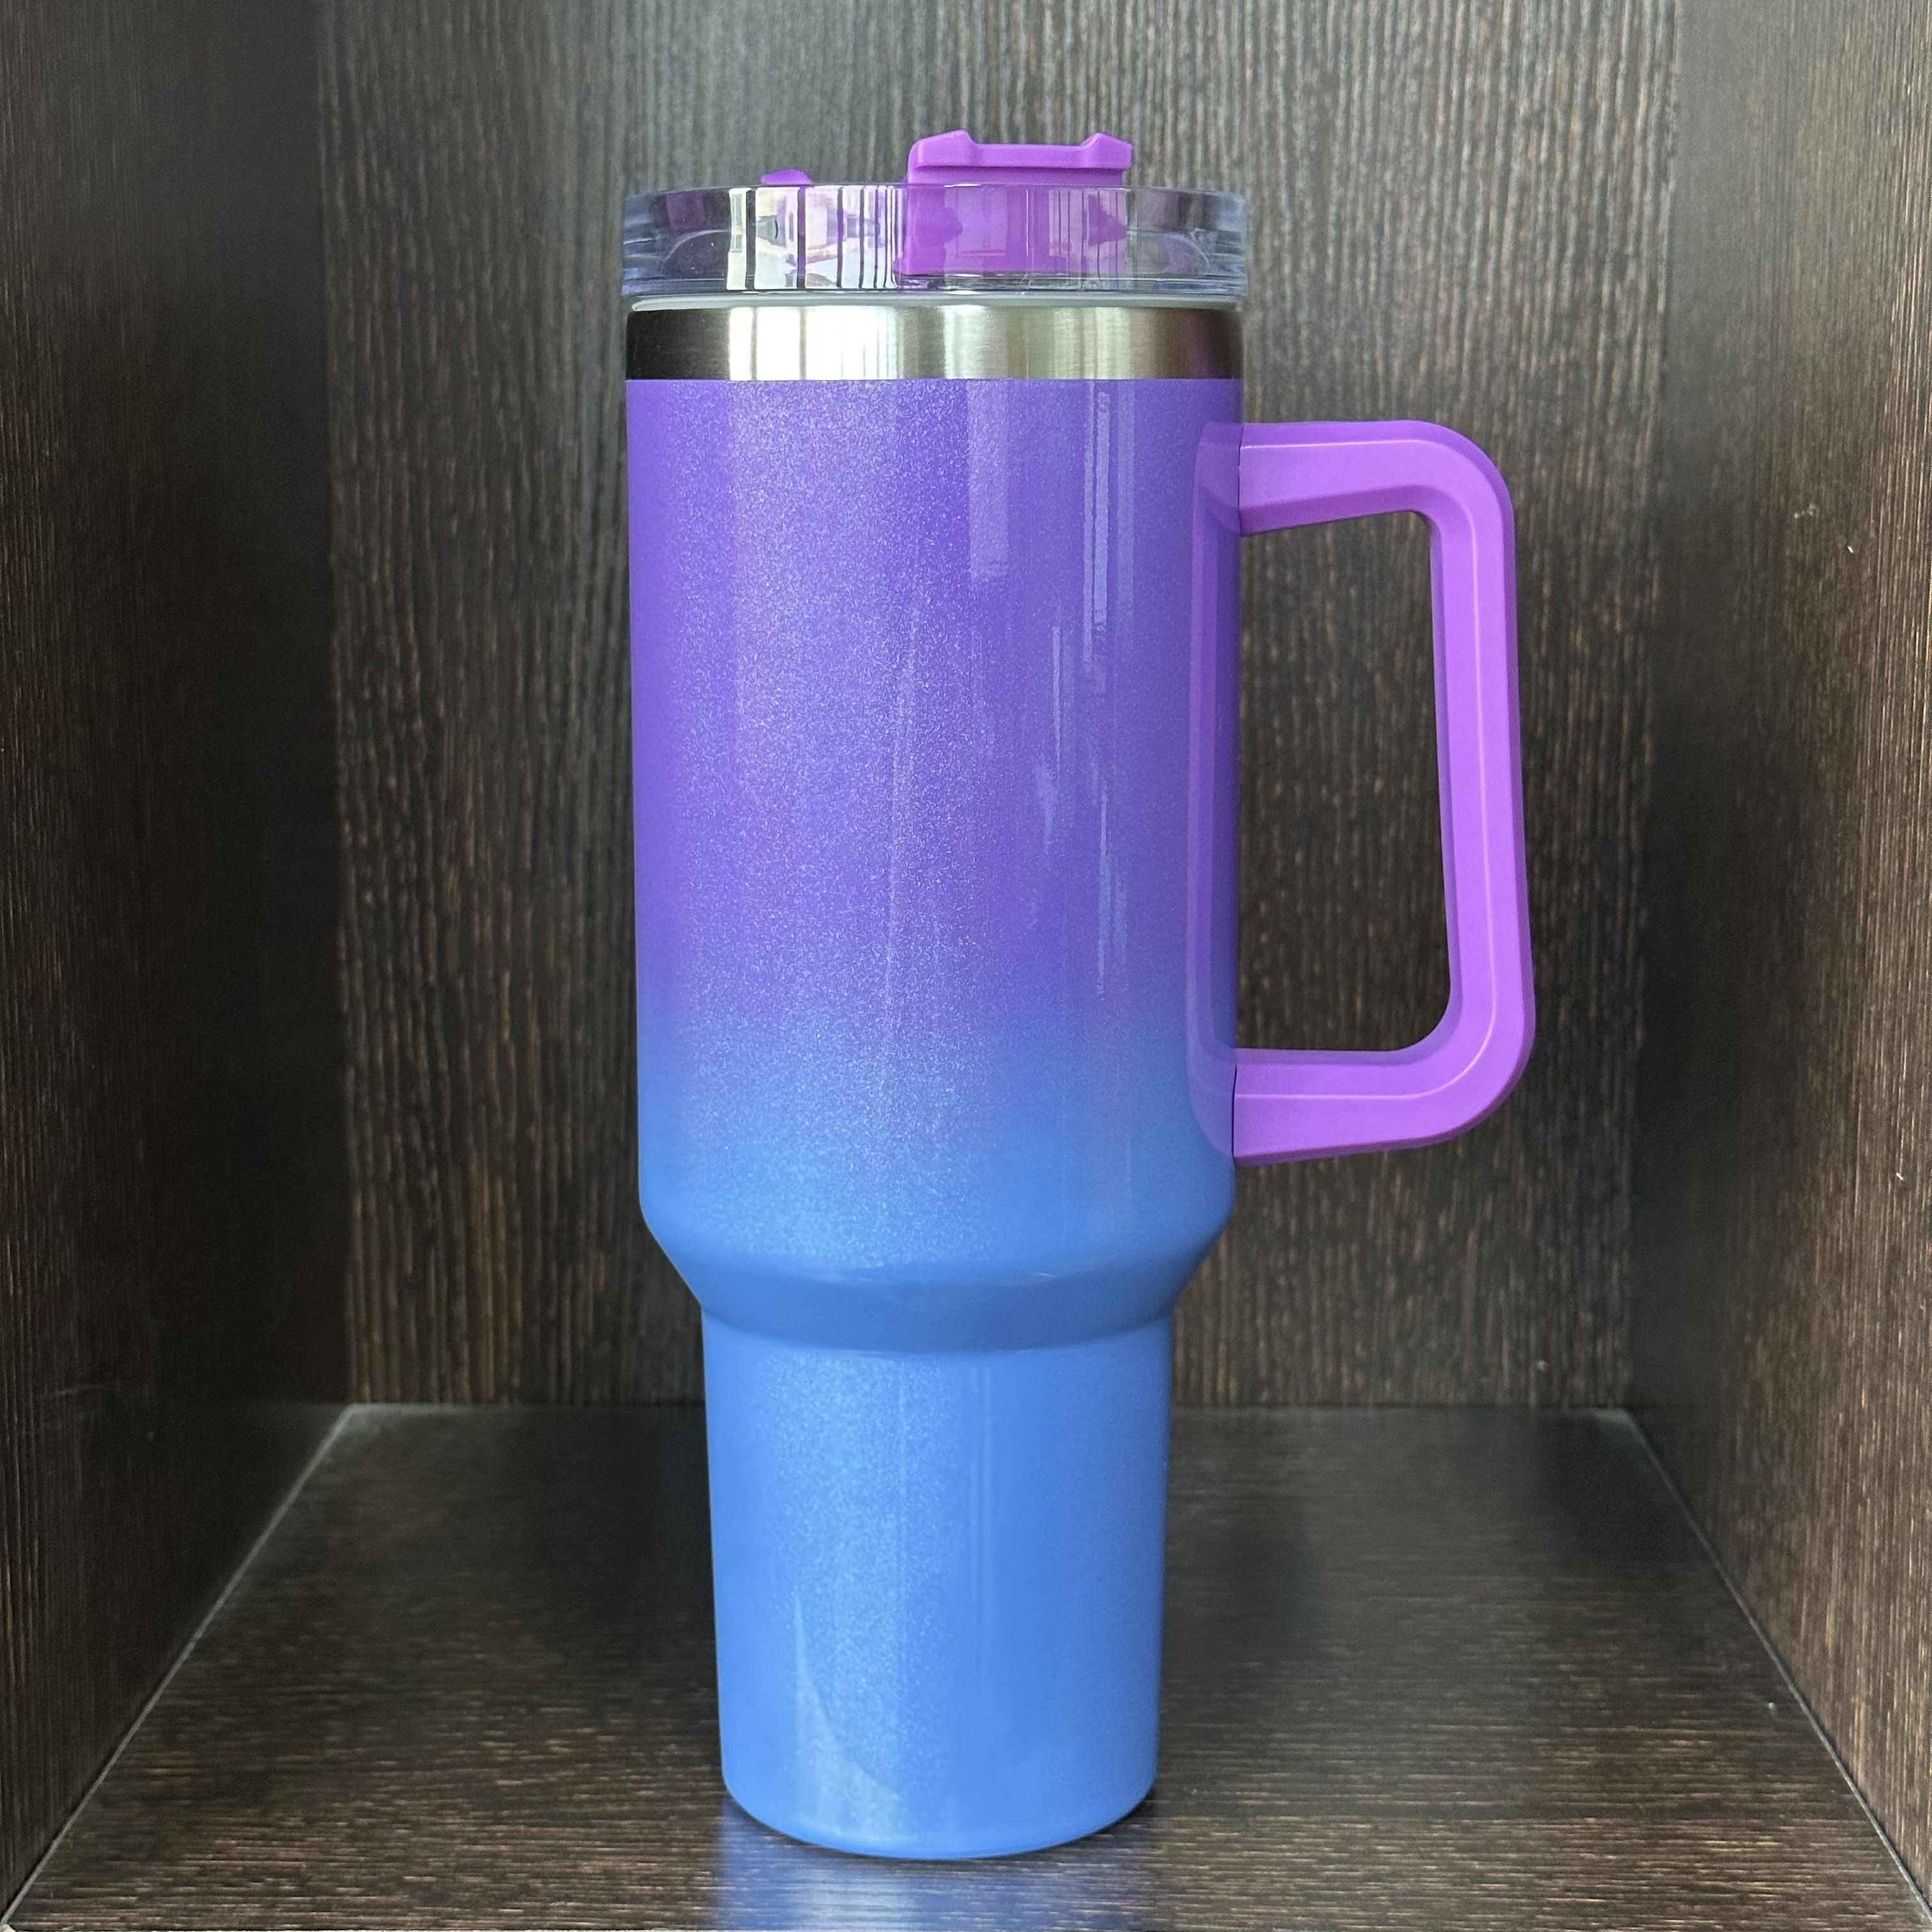 YETI Rambler 35 oz Straw Mug, Vacuum Insulated, Stainless Steel, Peak Purple